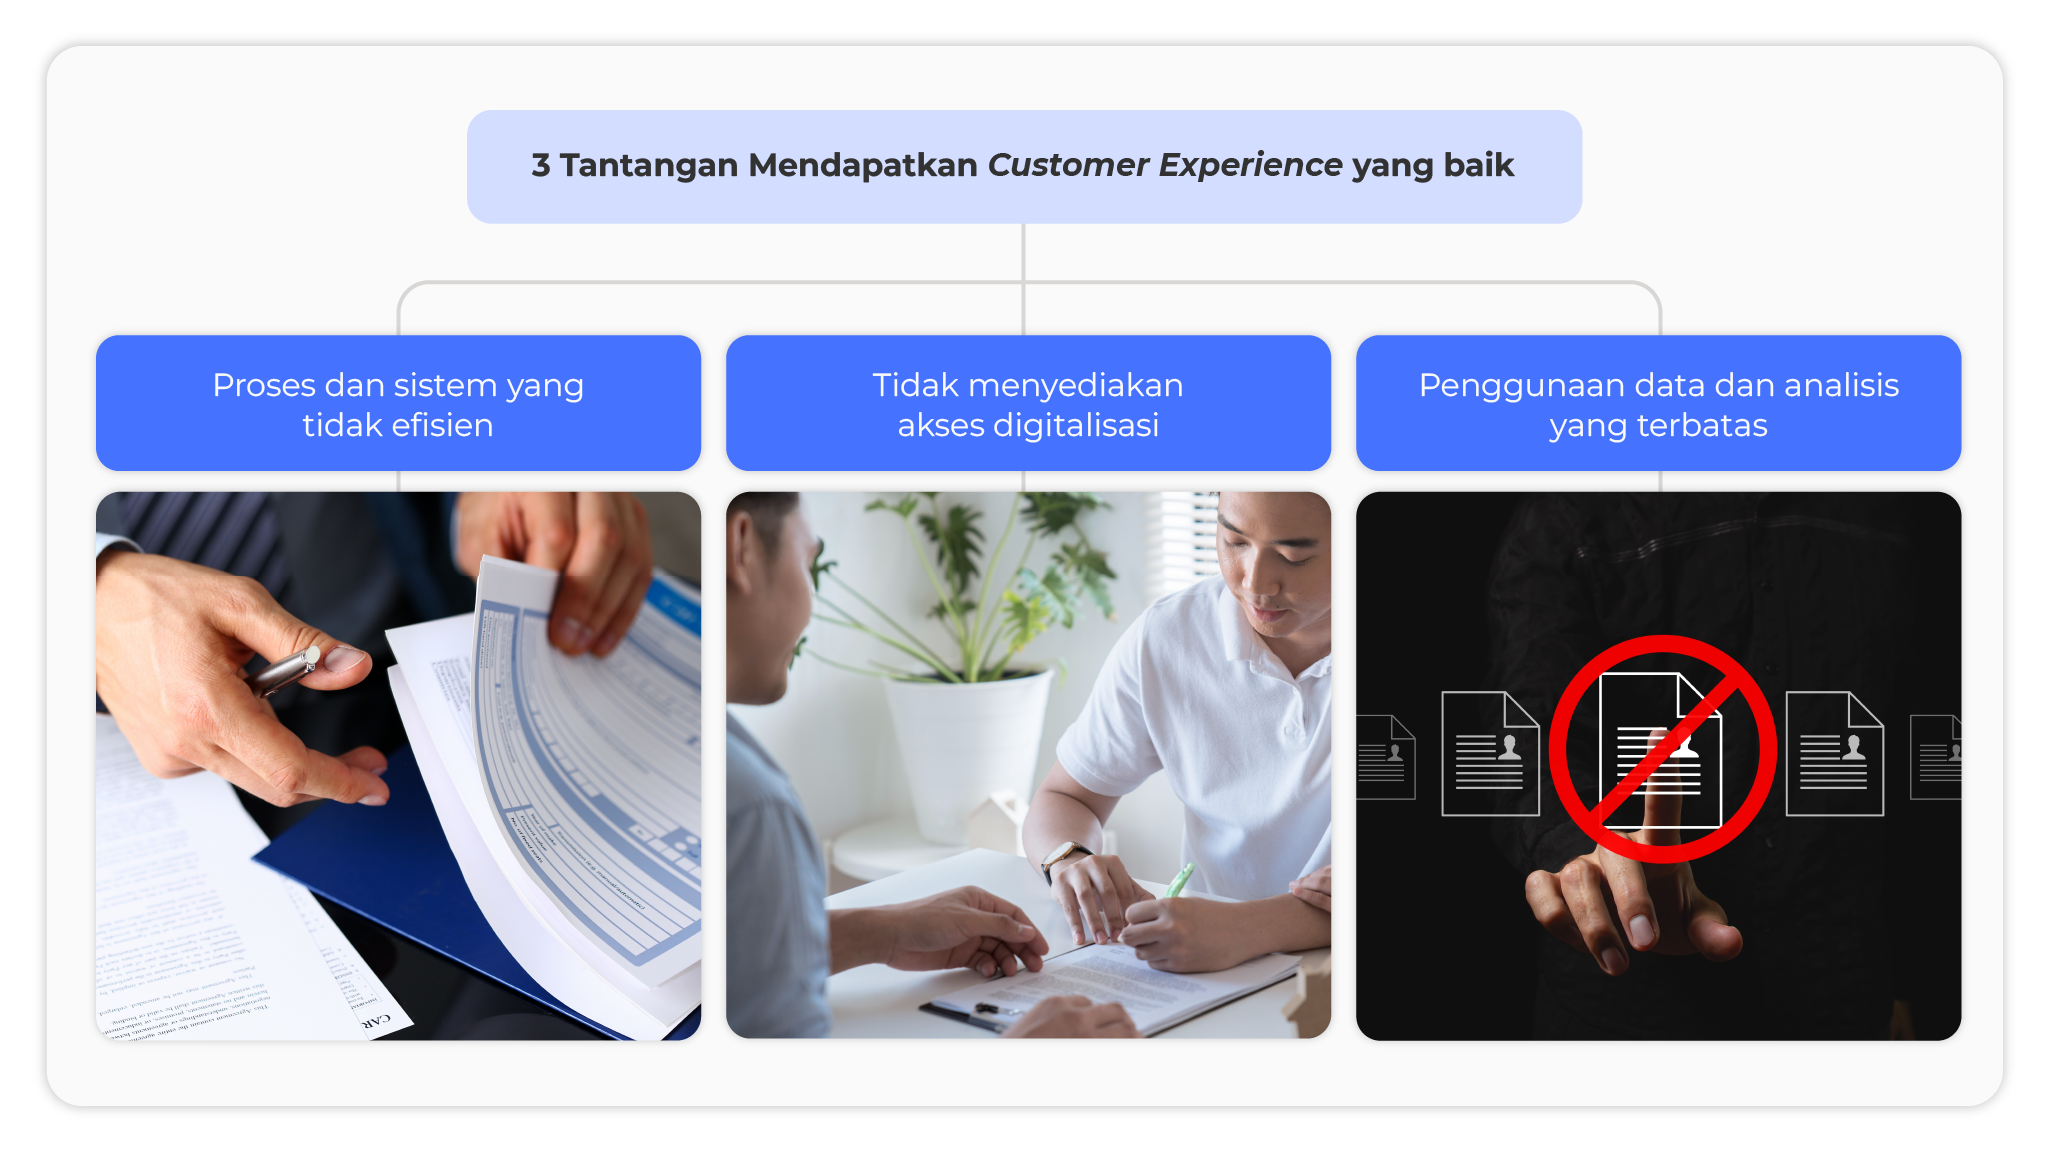 3 tantangan mendapatkan customer experience yang baik